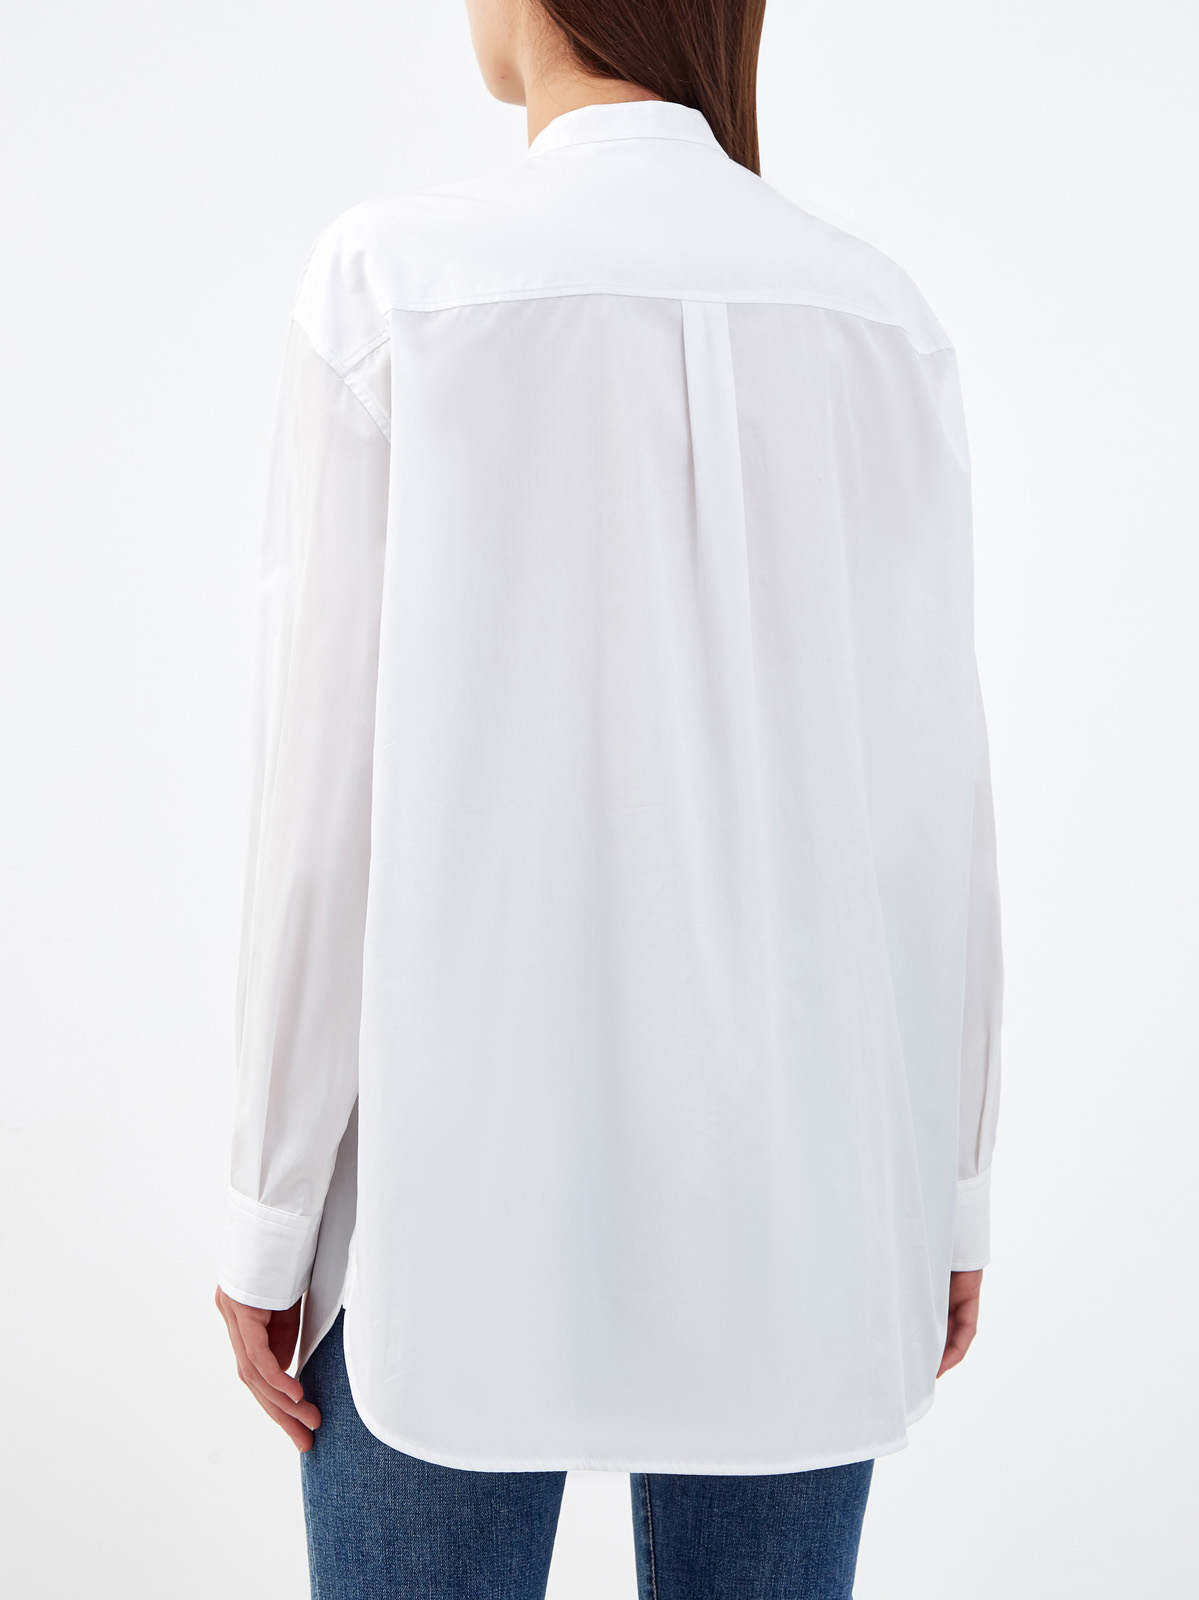 Объемная рубашка из капсульной коллекции Future Heritage с монограммой BURBERRY, цвет белый, размер S;L;XL;2XL;M - фото 4